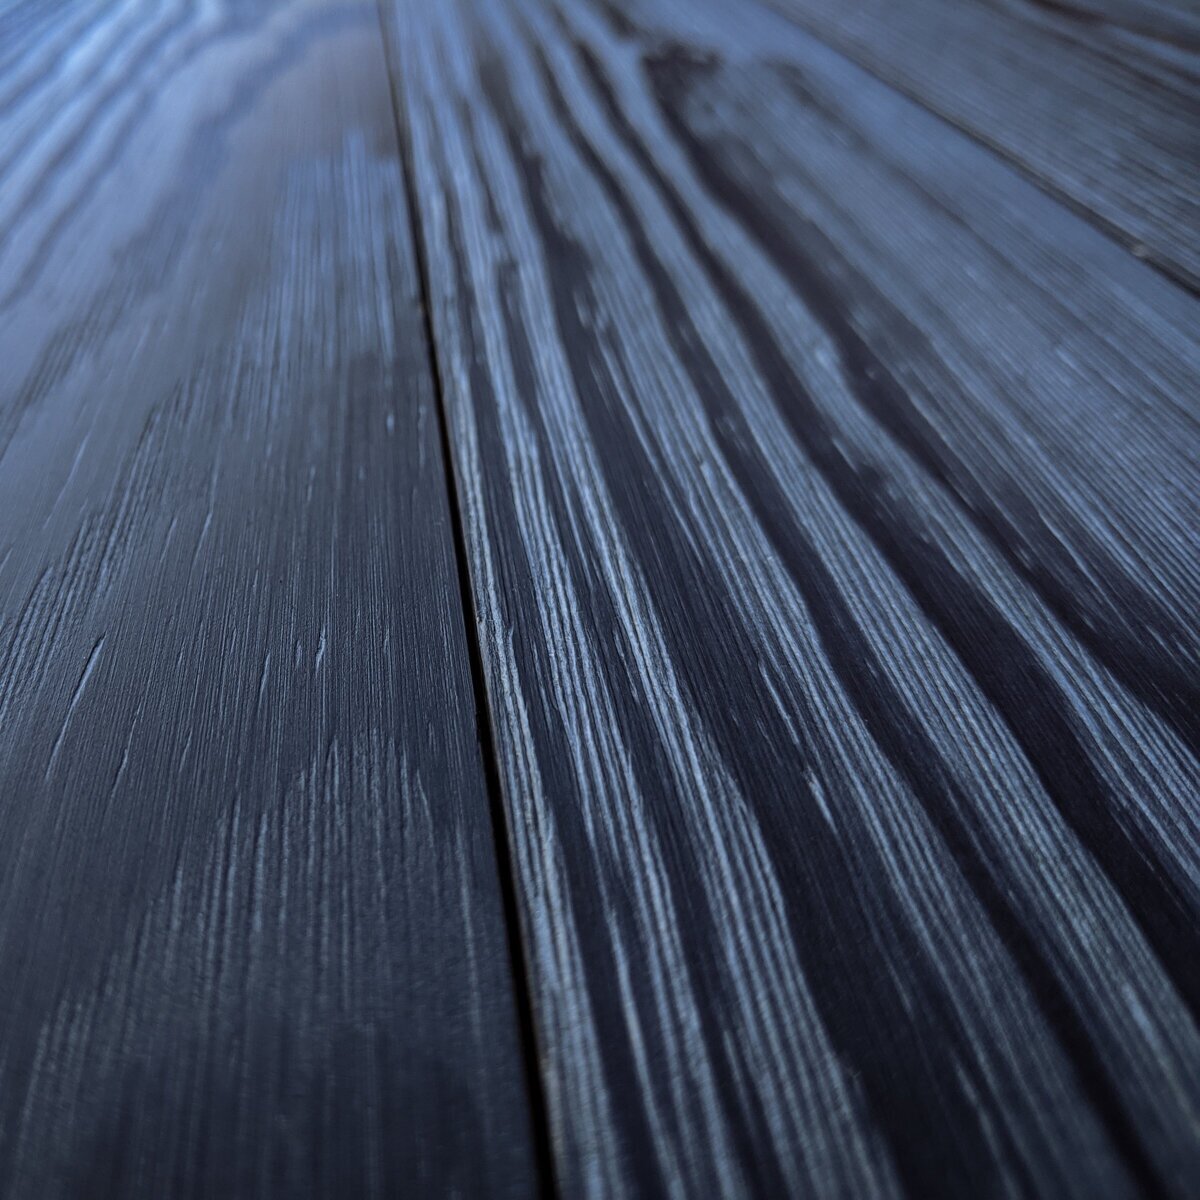 Blackboard-Pine-Detail-Edited.jpg